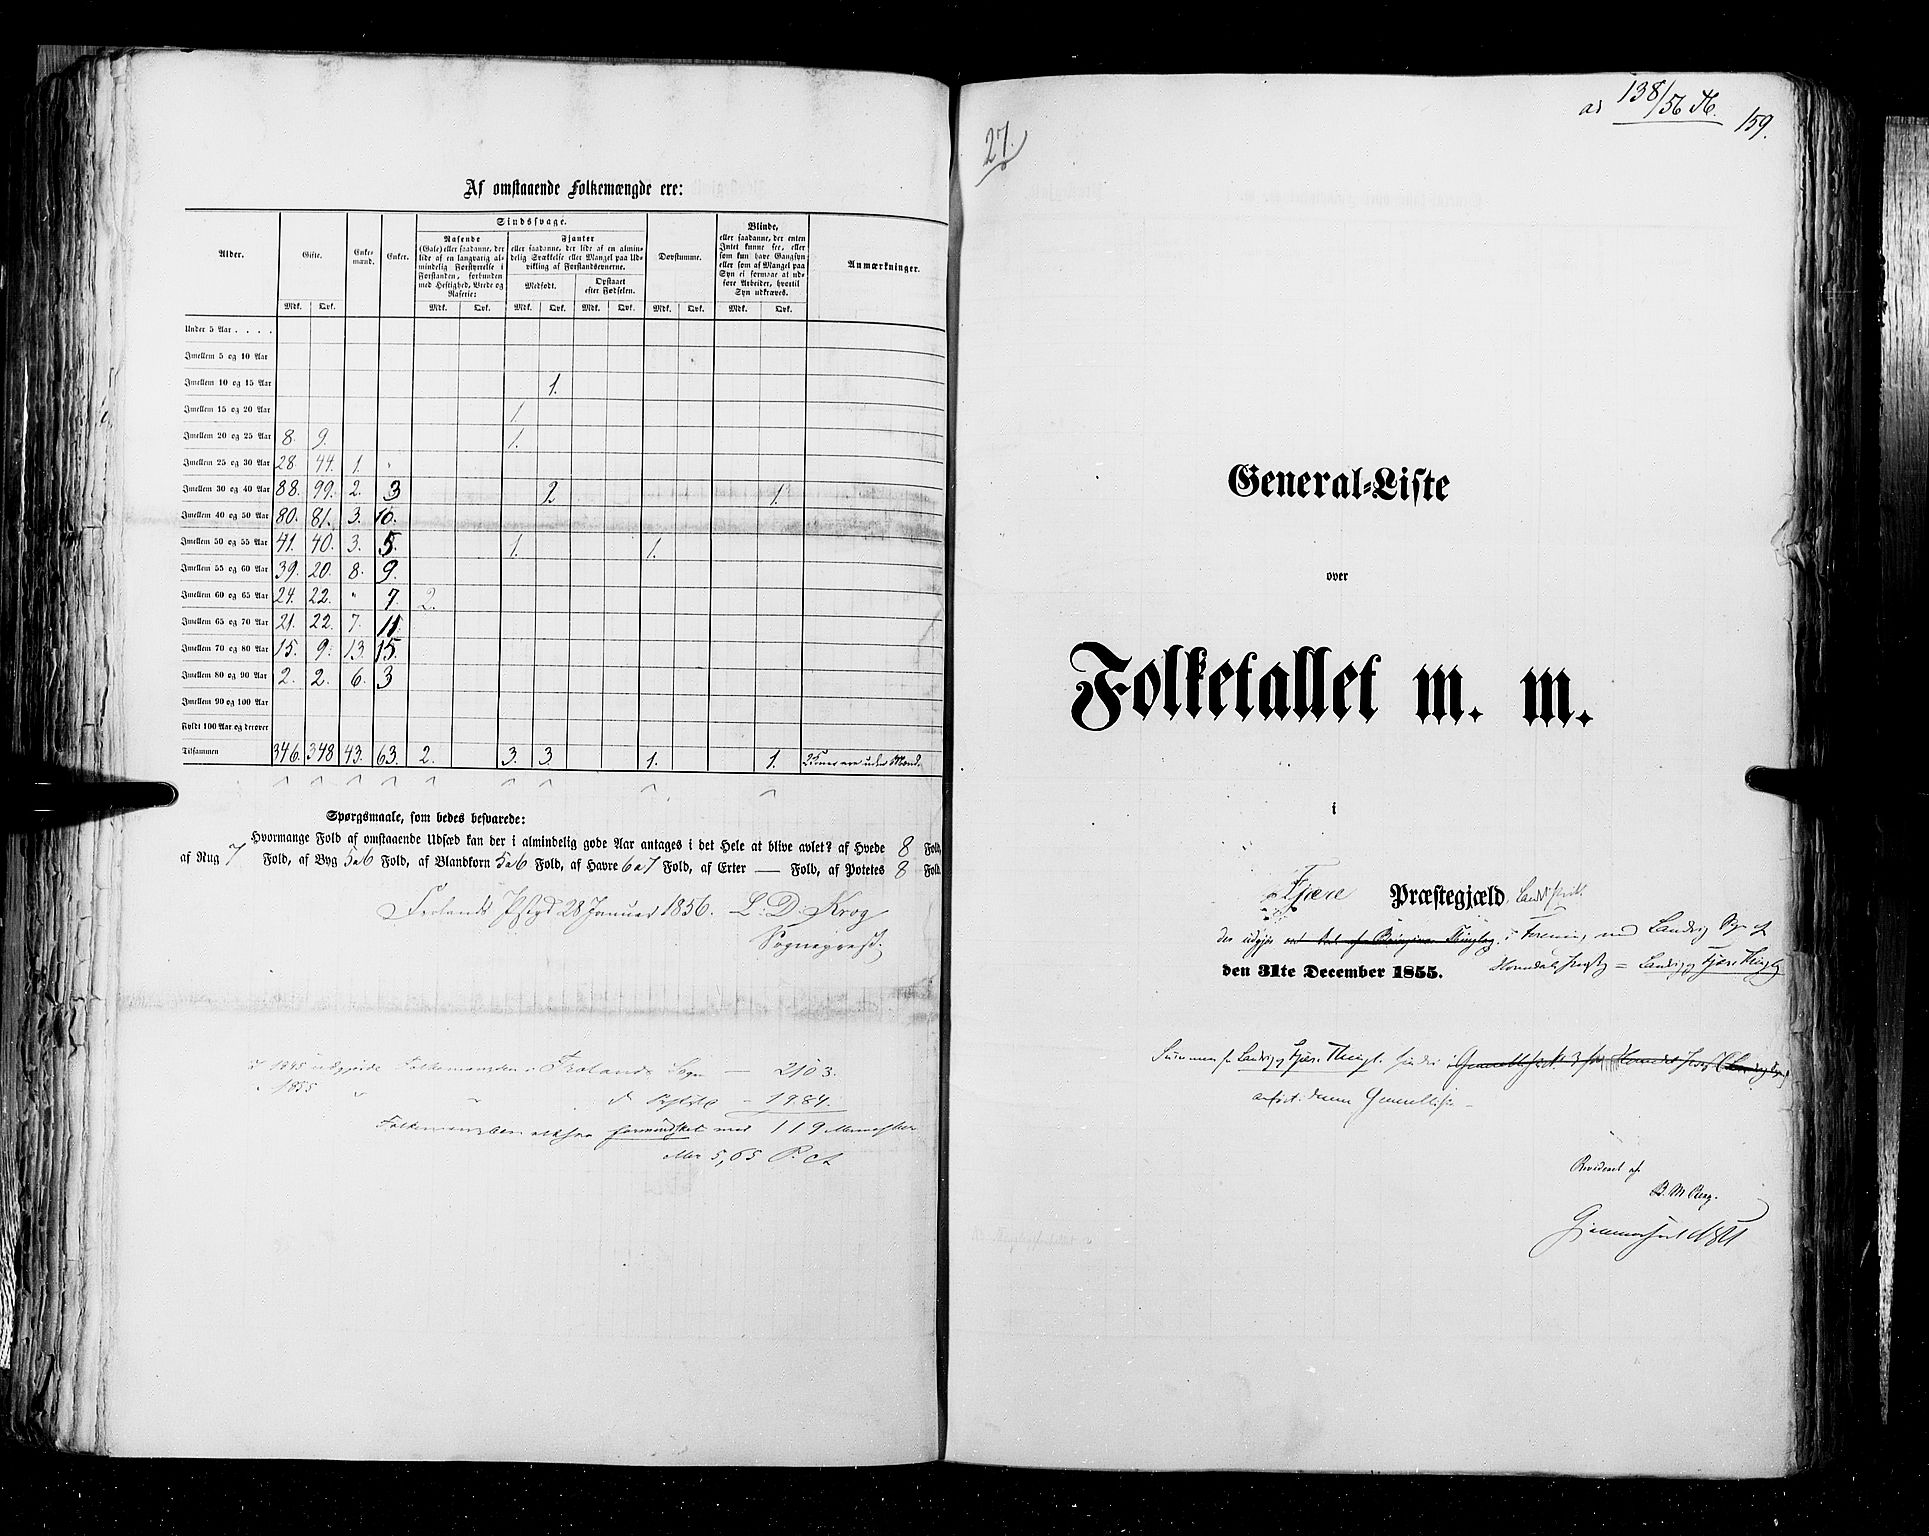 RA, Census 1855, vol. 3: Bratsberg amt, Nedenes amt og Lister og Mandal amt, 1855, p. 159